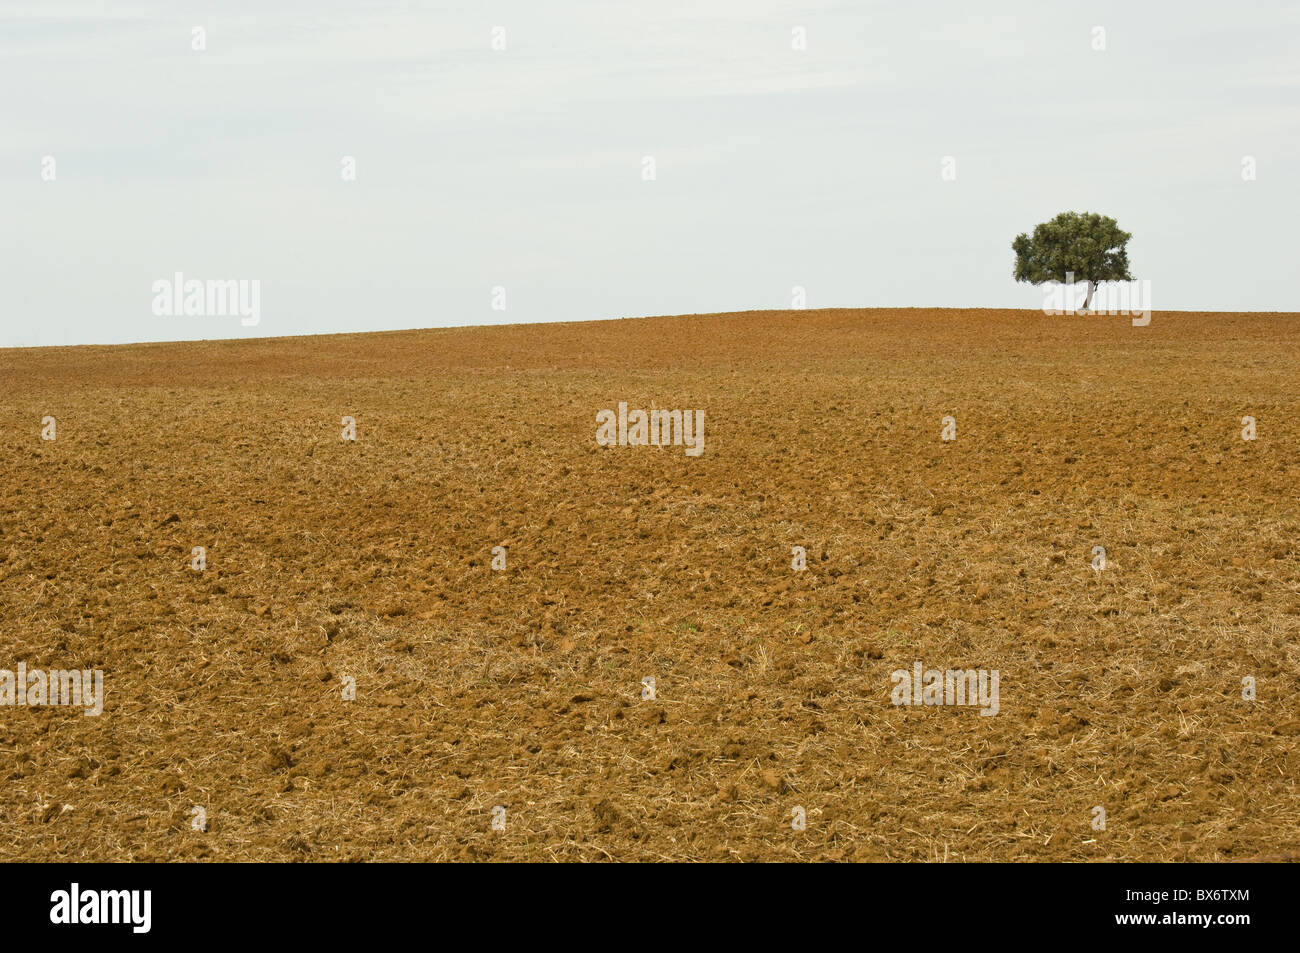 Albero solitario nel deserto Foto Stock